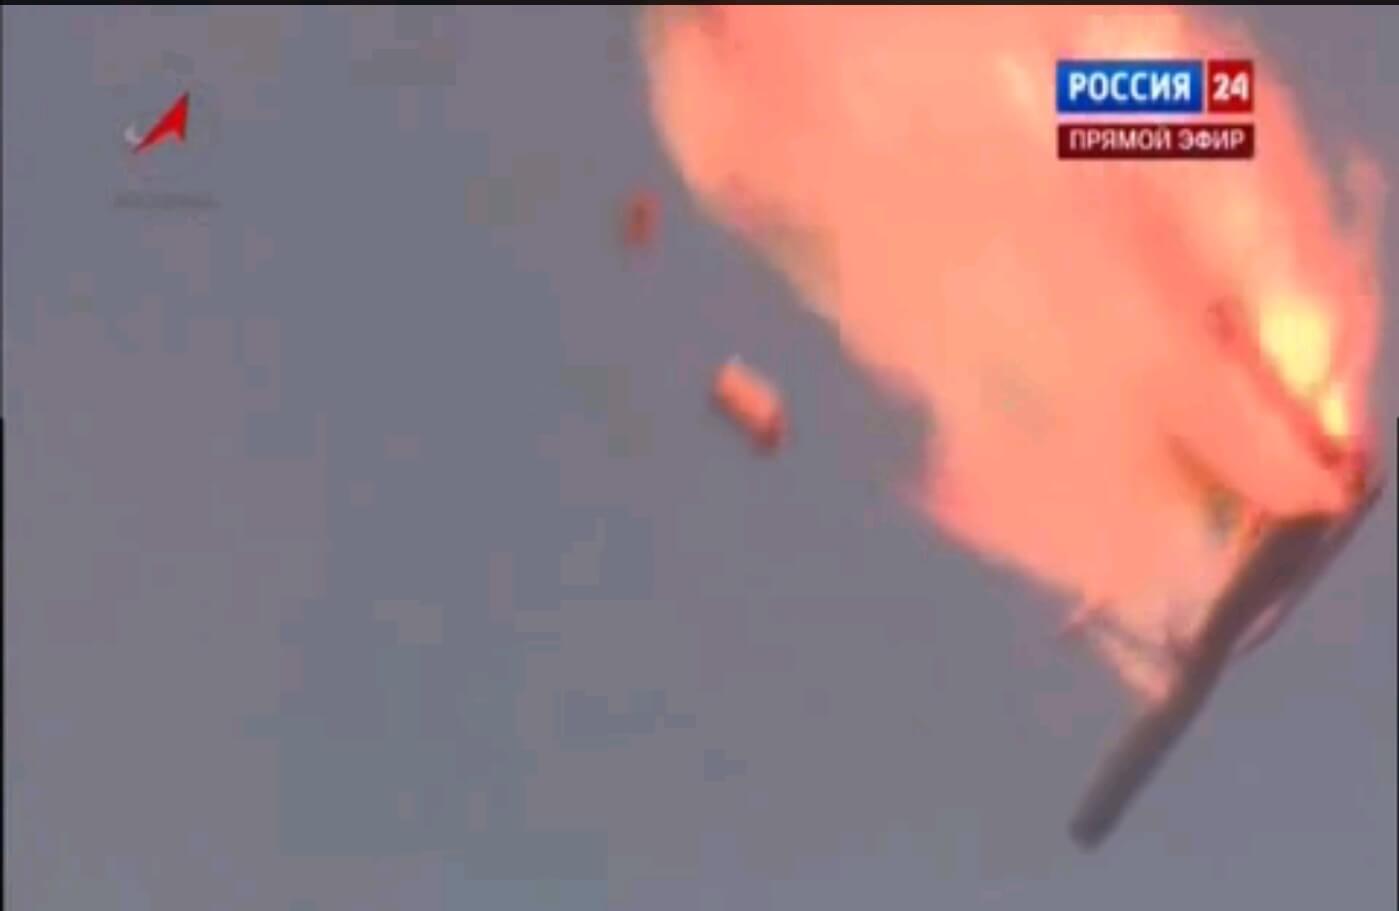 פיצוץ טיל Progress-M ב-2 ביולי 2013. צילום מסך: סוכנות החלל הרוסית ורשת רוסיה 24